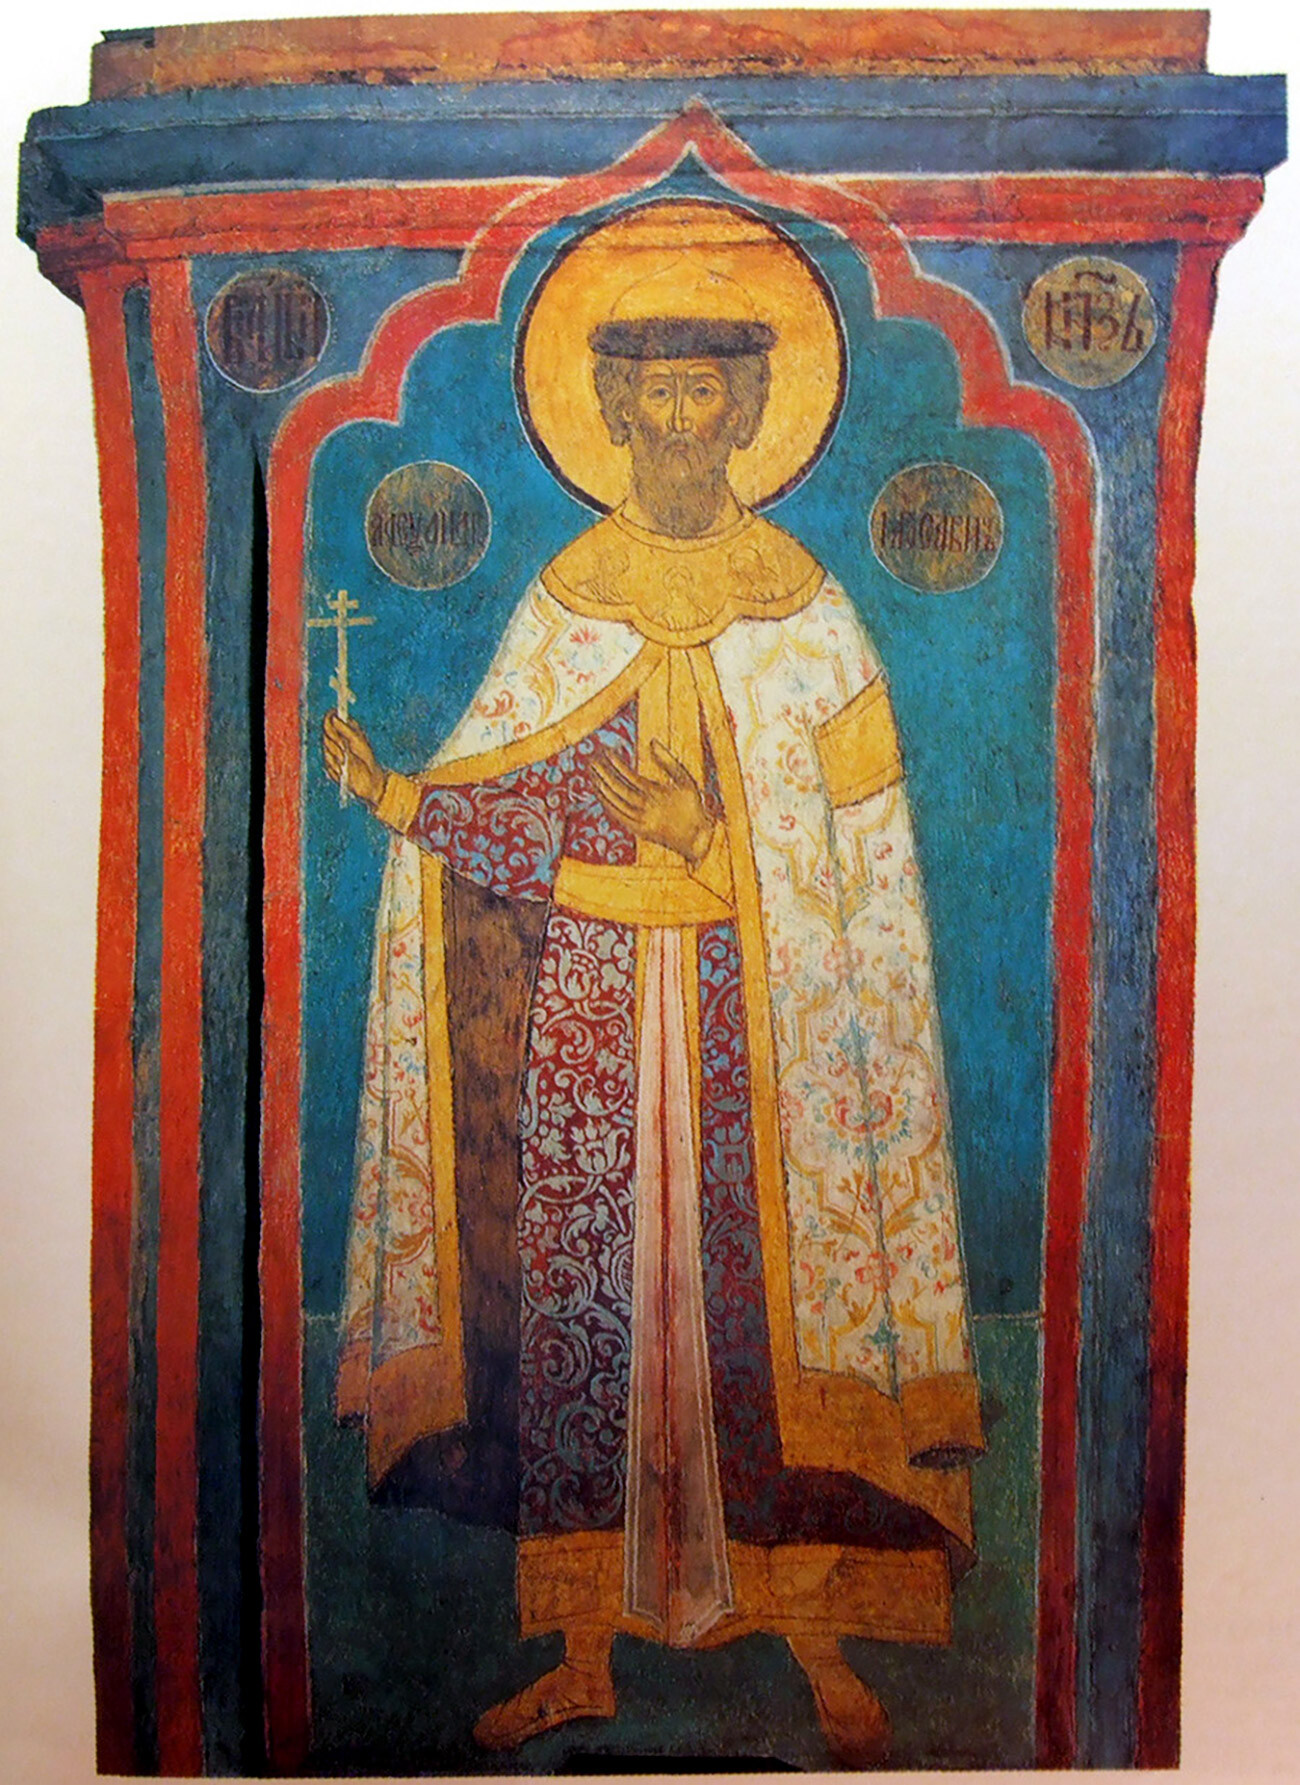 Der Heilige Alexander Newskij. Das Fresko in der Erzengel-Kathedrale des Moskauer Kremls